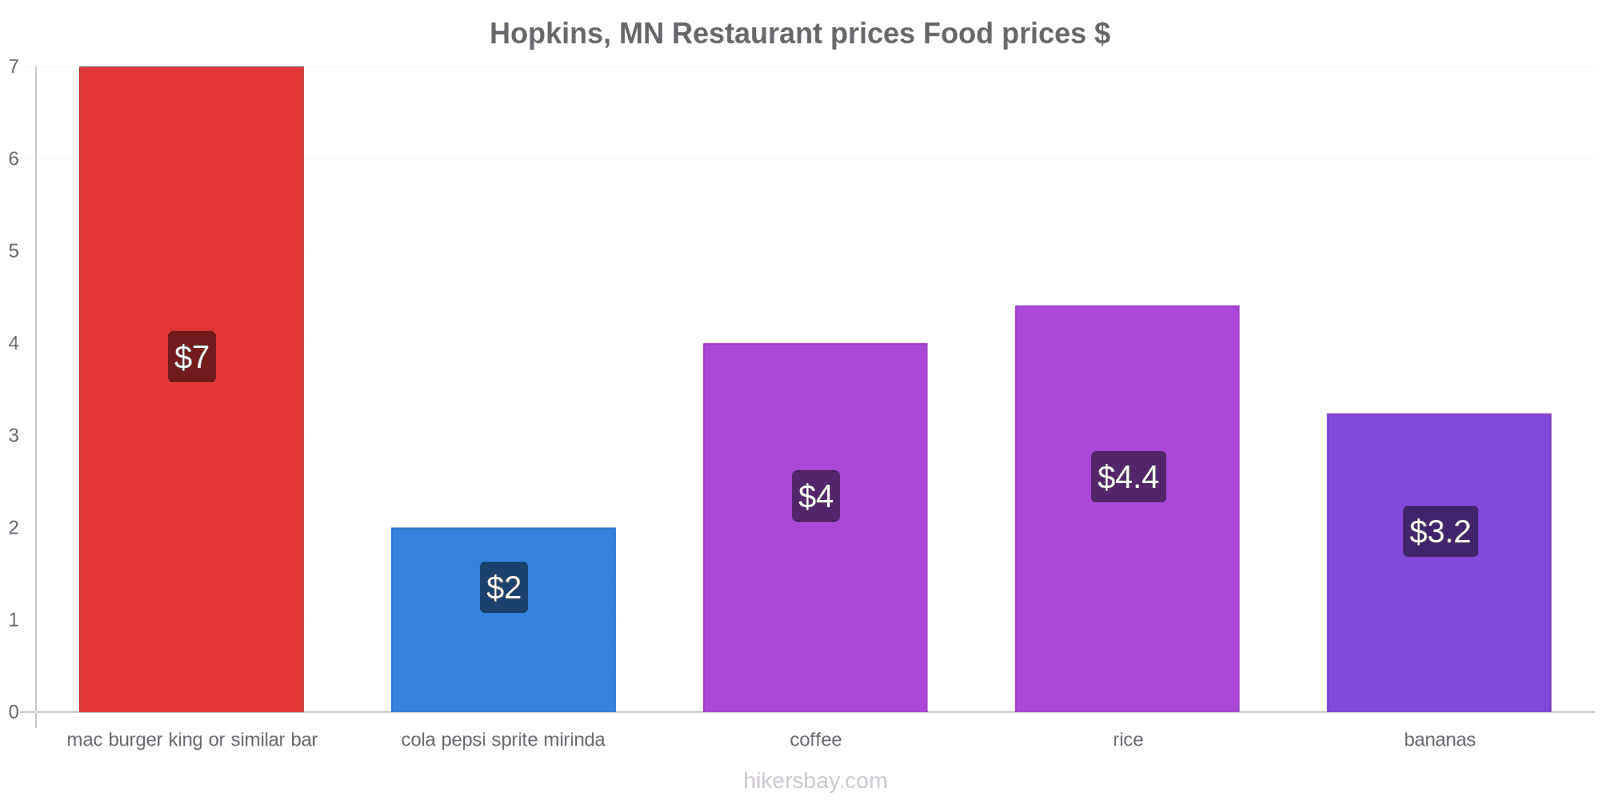 Hopkins, MN price changes hikersbay.com